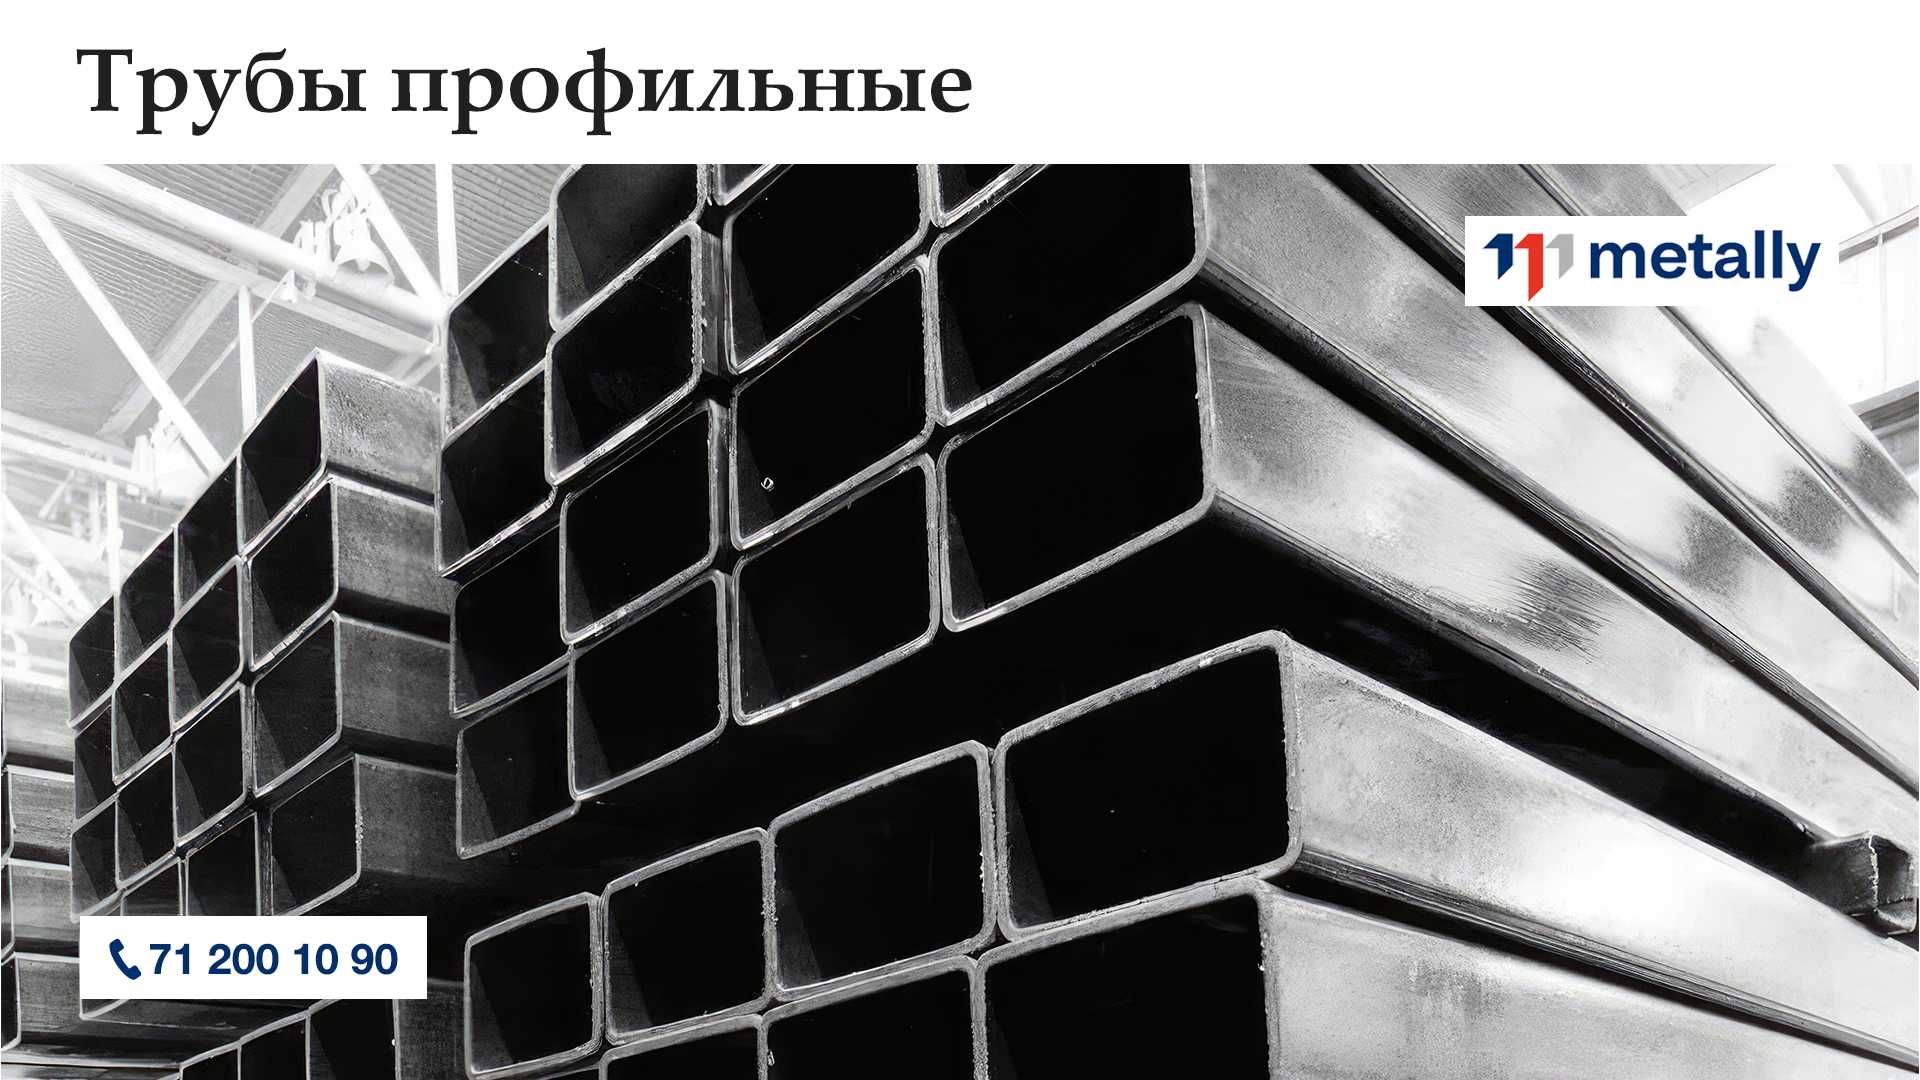 Metally - Ваш надежный поставщик профильных труб в Узбекистане!